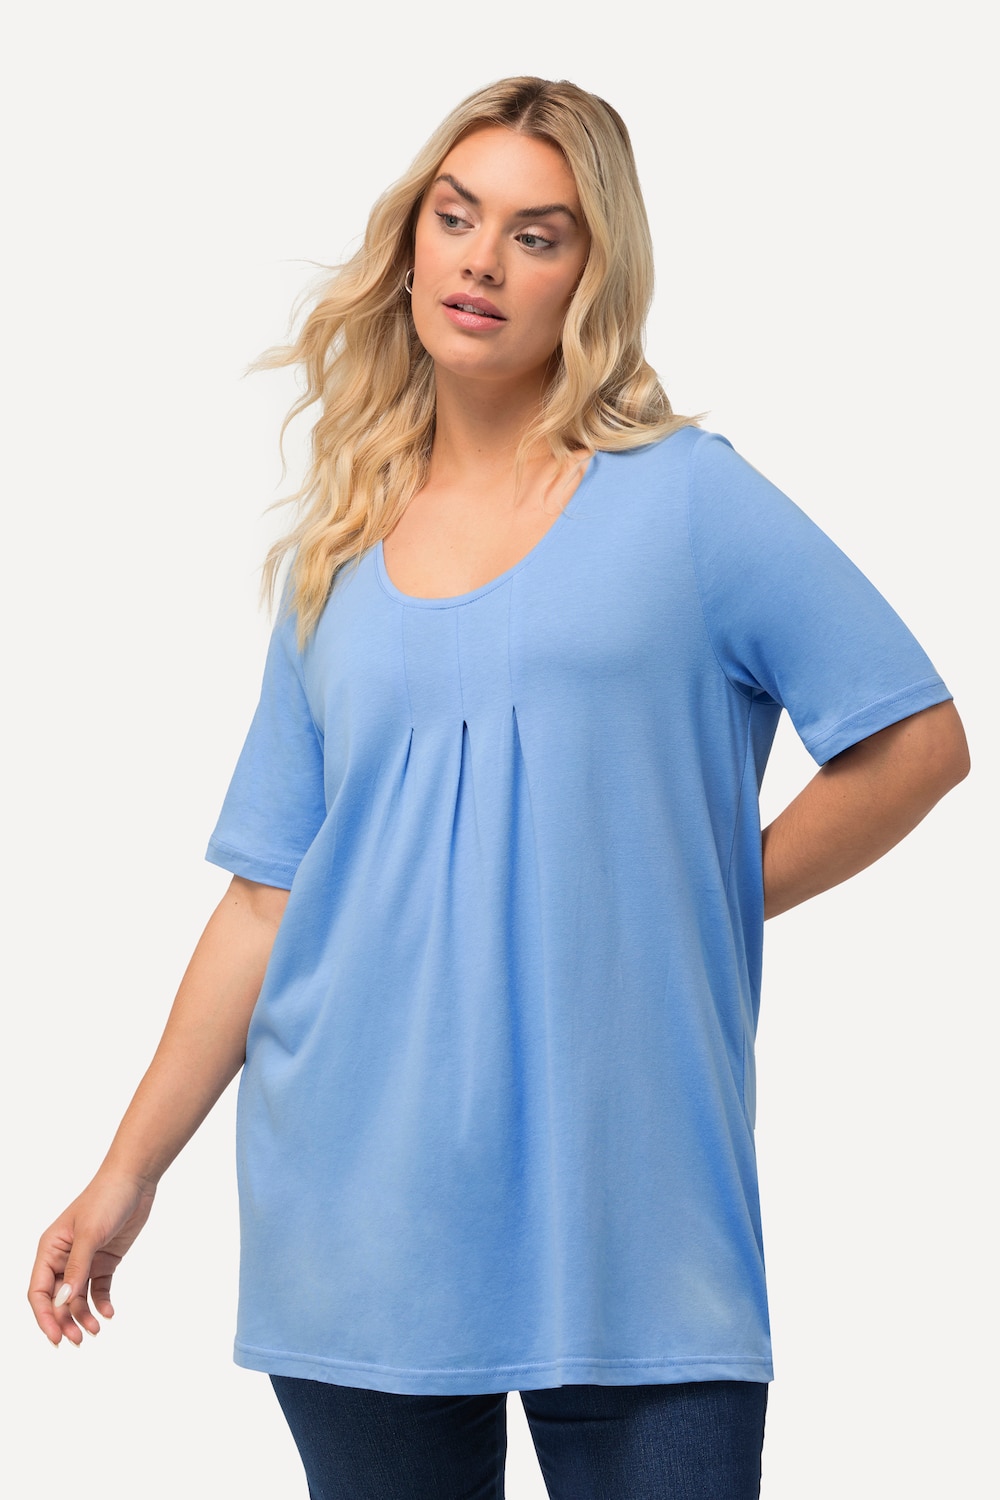 Grote Maten T-Shirt, Dames, blauw, Maat: 46/48, Katoen/Synthetische vezels, Ulla Popken